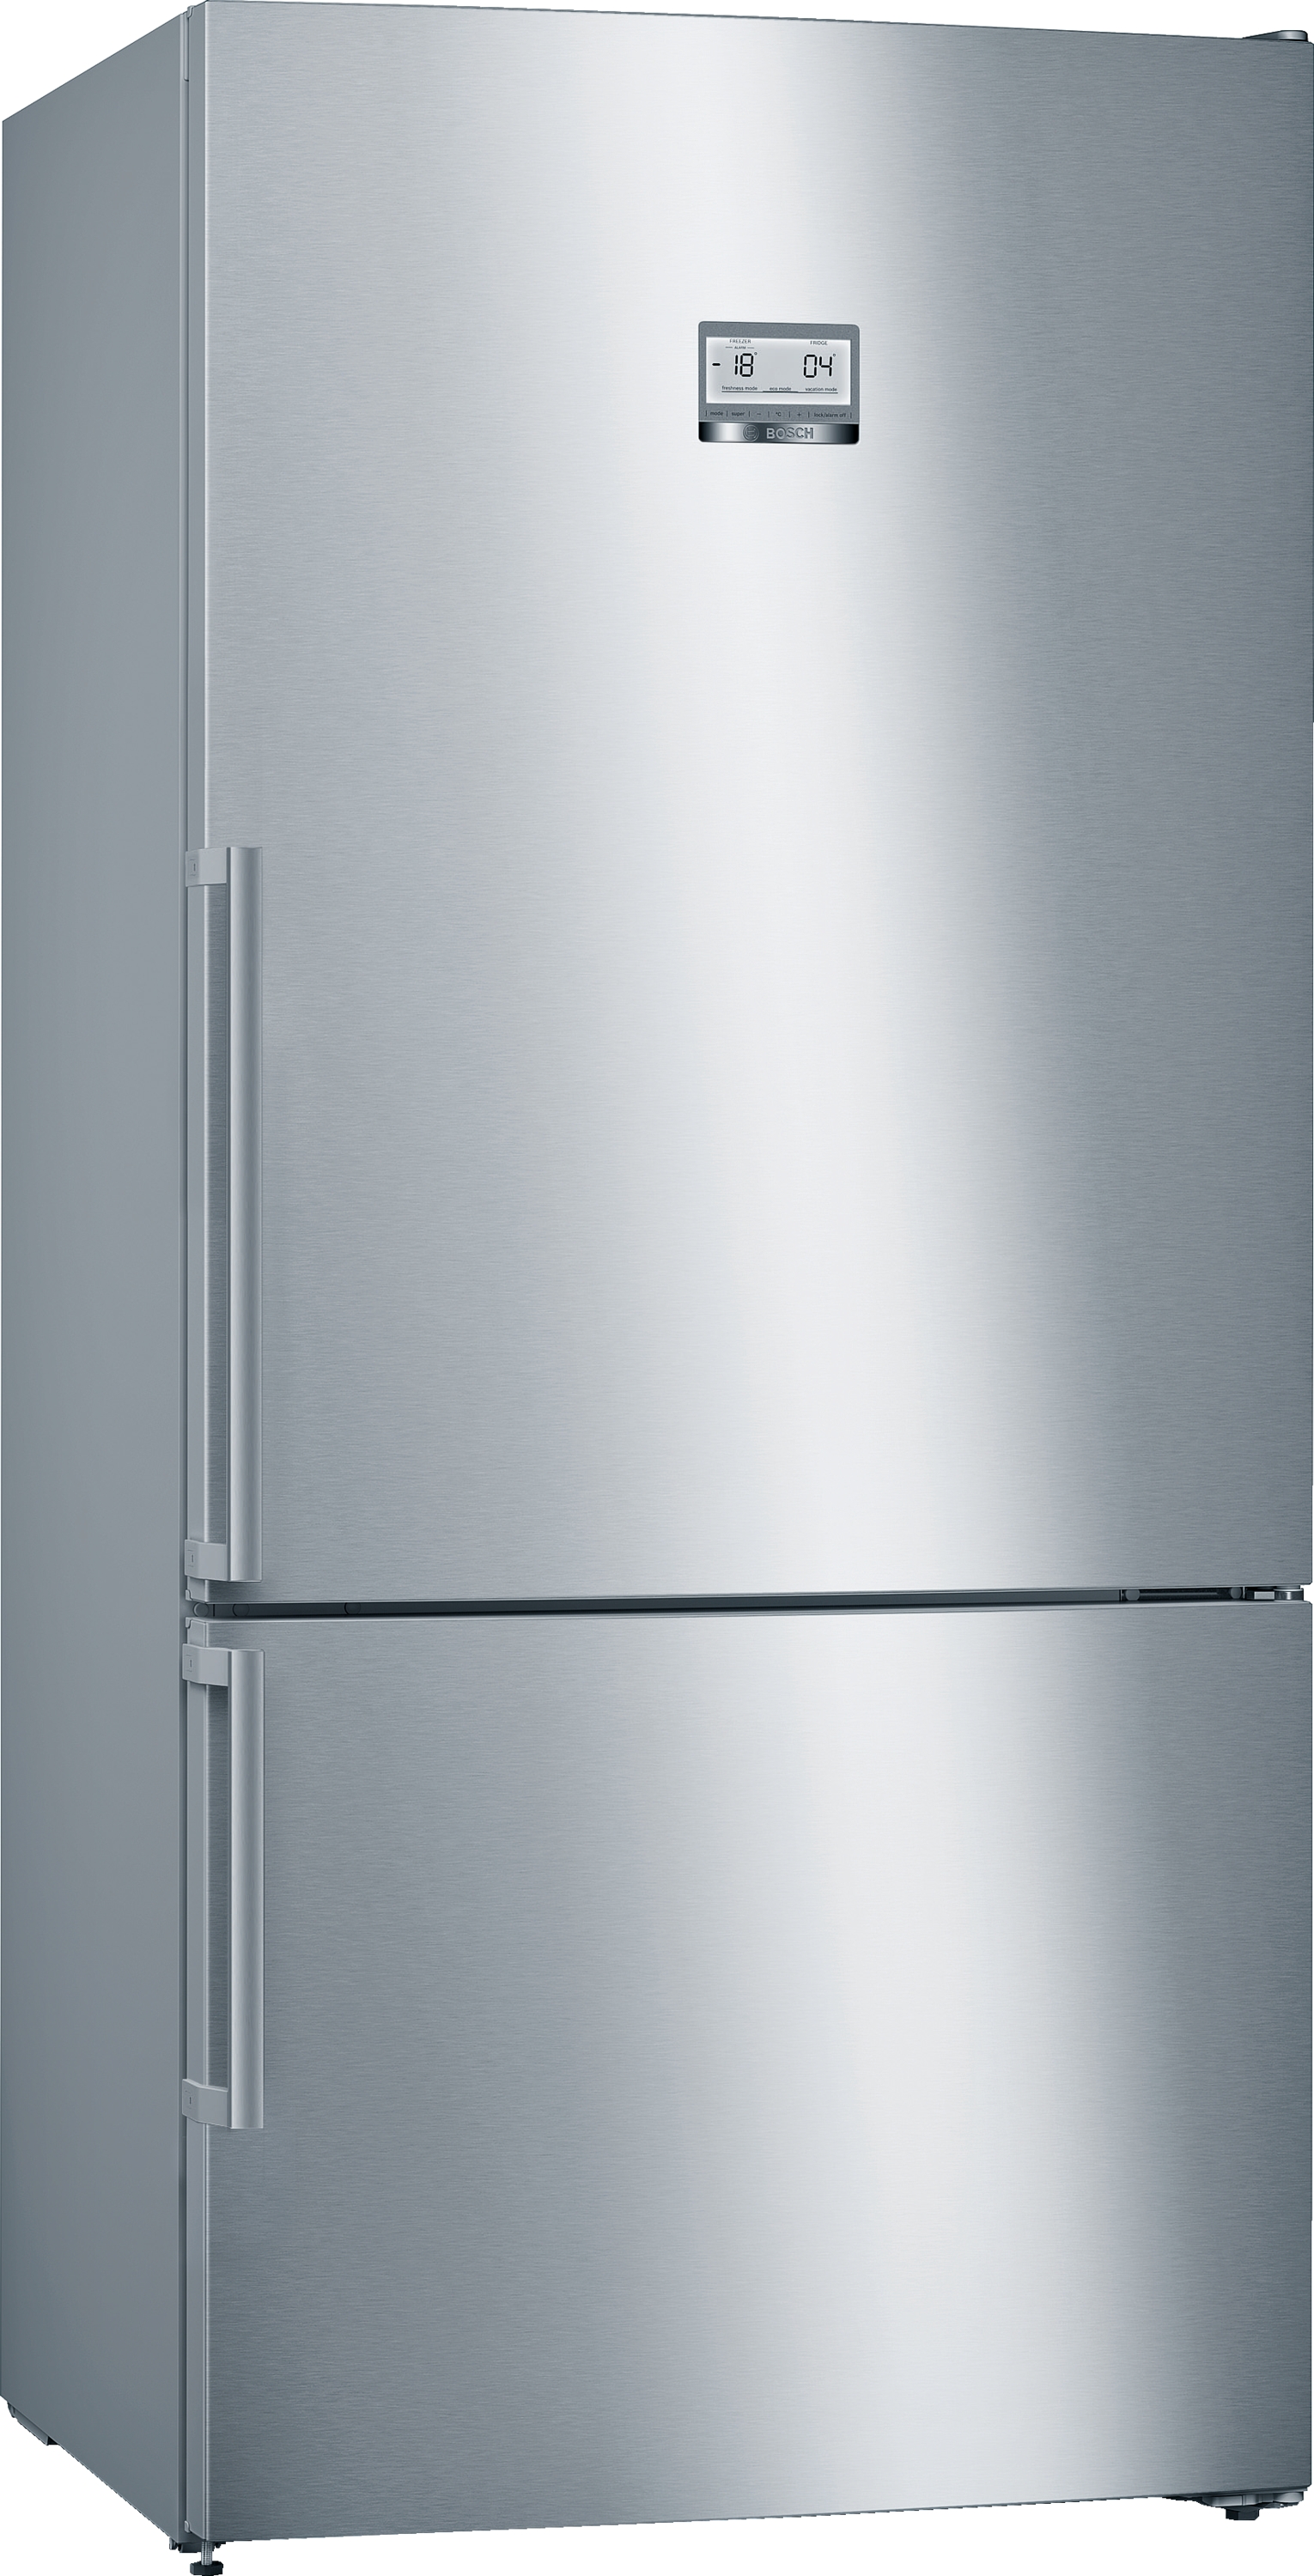 KGN86AIDP Combină frigorifică independentă 186 x 86 cm Inox AntiAmprentă, 5 ANI GARANTIE. Clasa Energetica D